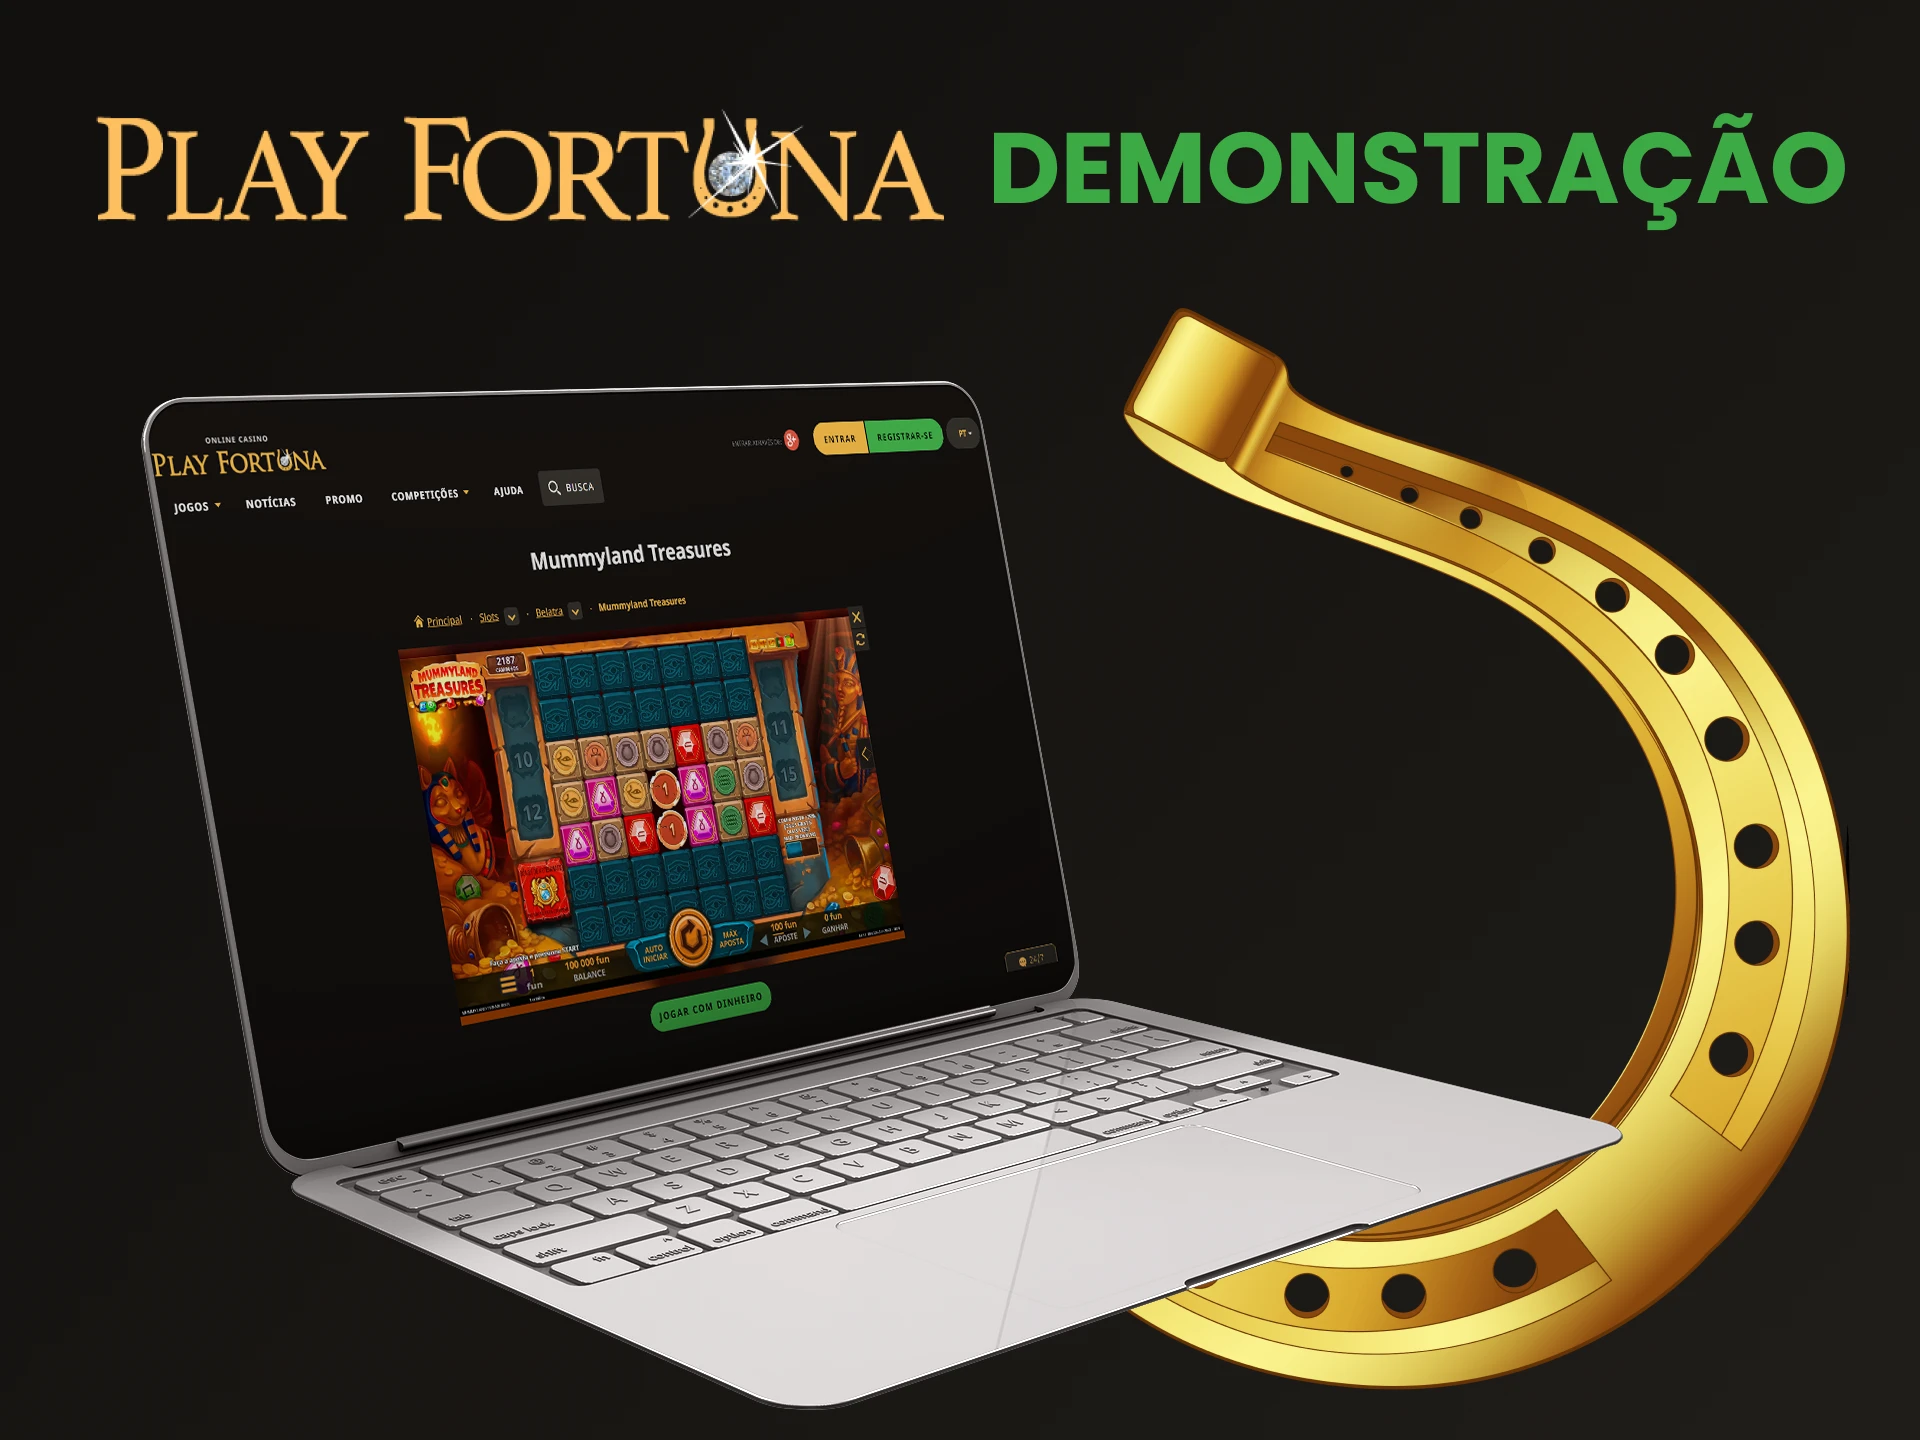 Play Fortuna possui uma versão demo de jogos de caça-níqueis.